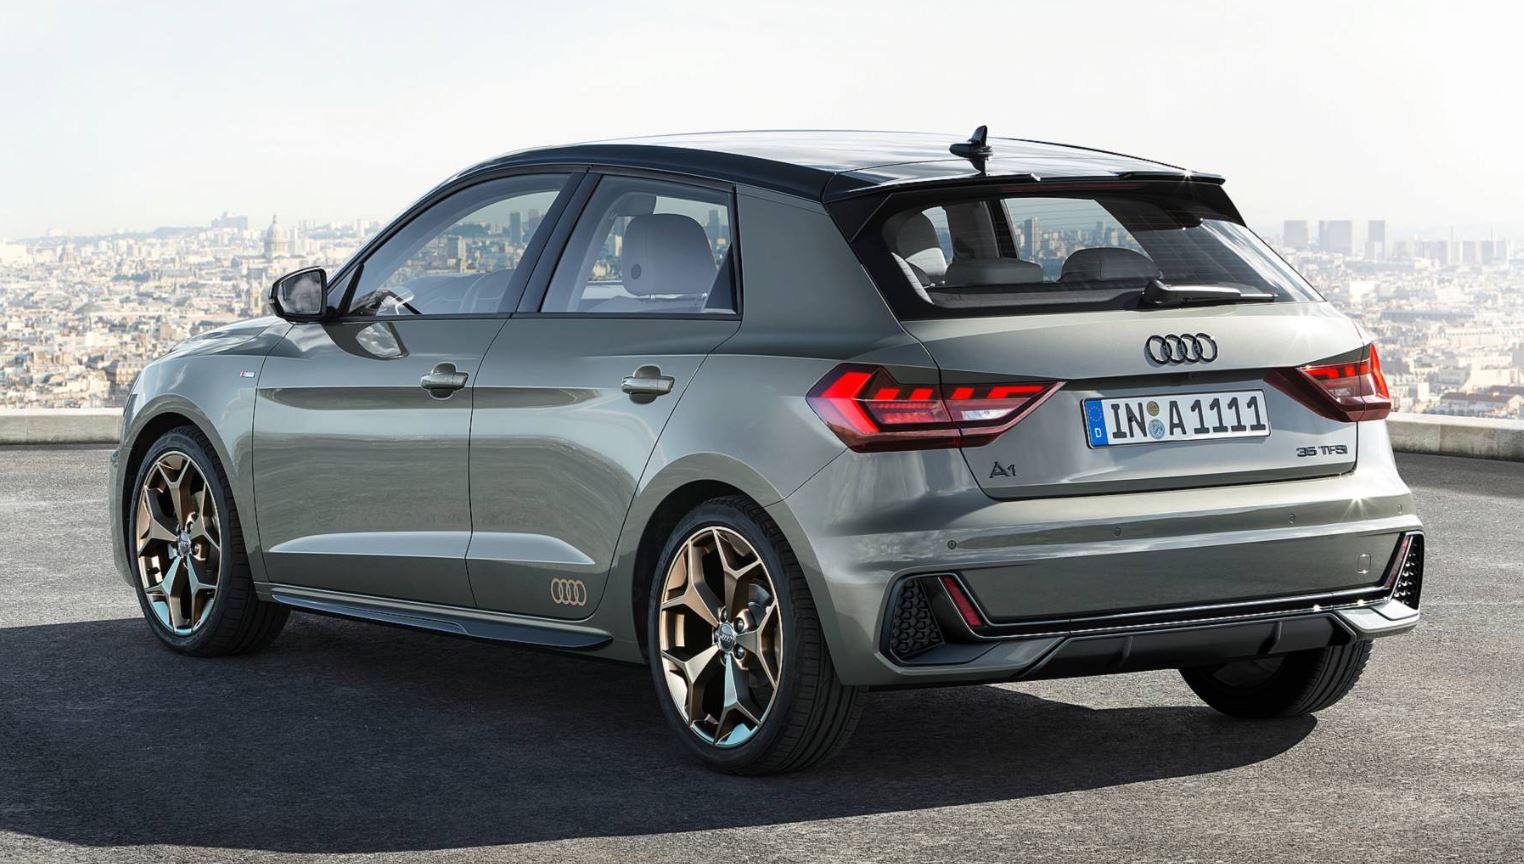 2019 Audi A1 Sportback tanıtıldı; 200 beygirlik motorla geliyor